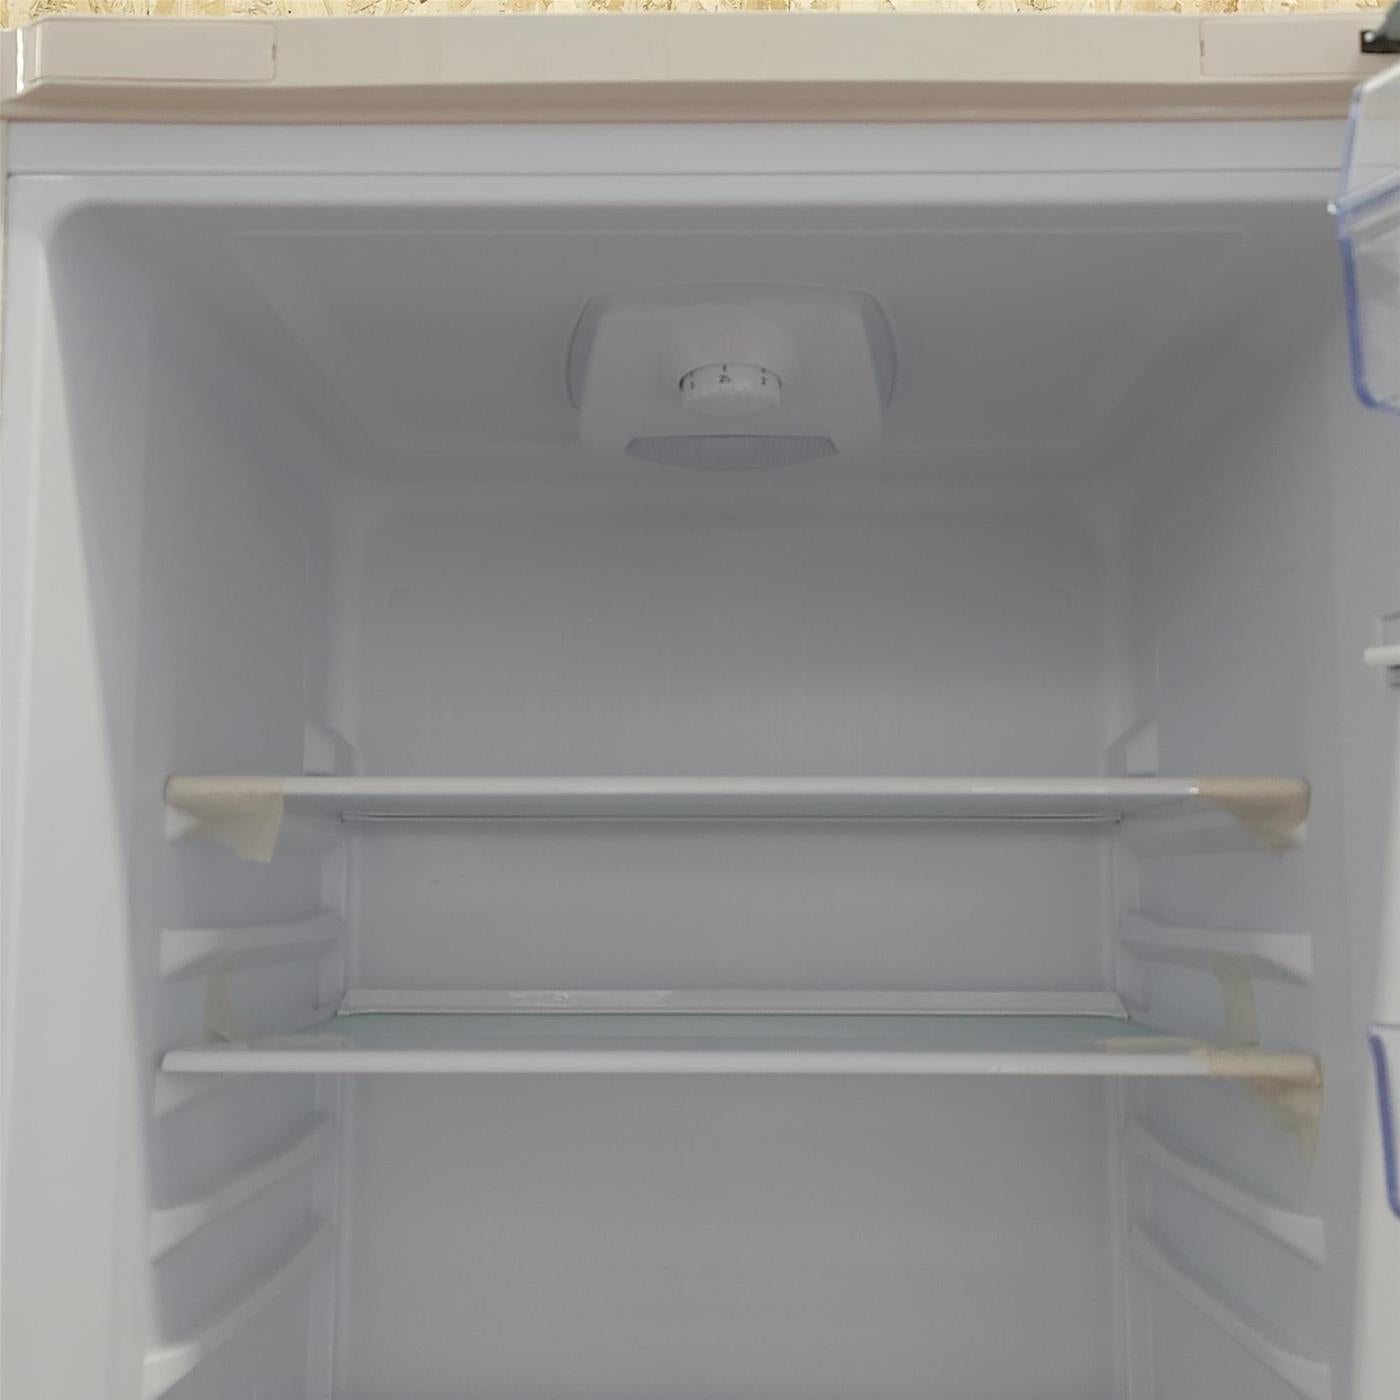 Beko RCSA330K30WN frigorifero con congelatore Libera installazione 300 L F Bianco